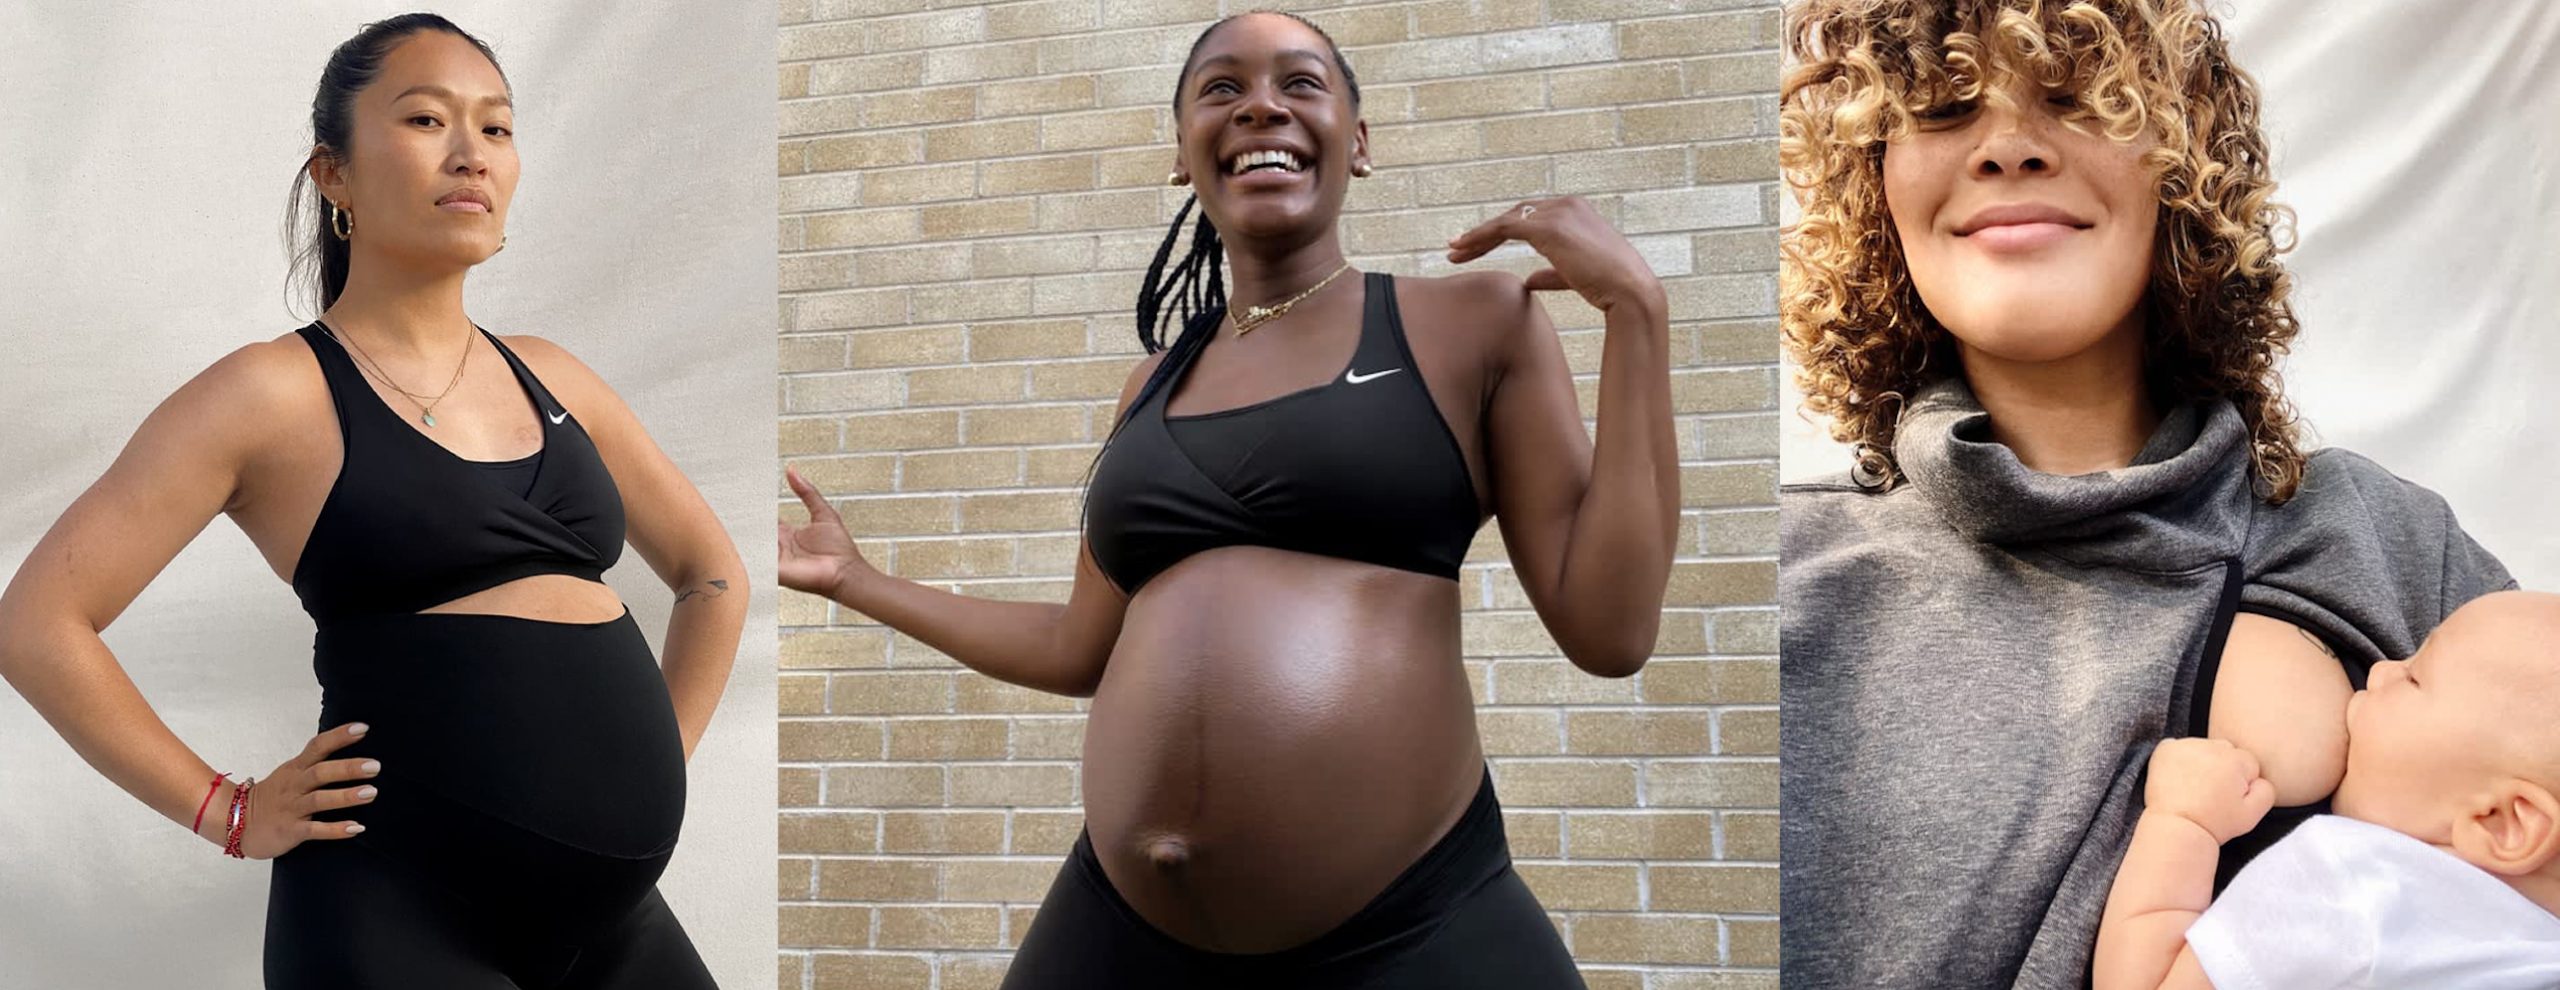 https://www.nylon.com.sg/wp-content/uploads/2020/09/nike-maternity-banner-scaled.jpg